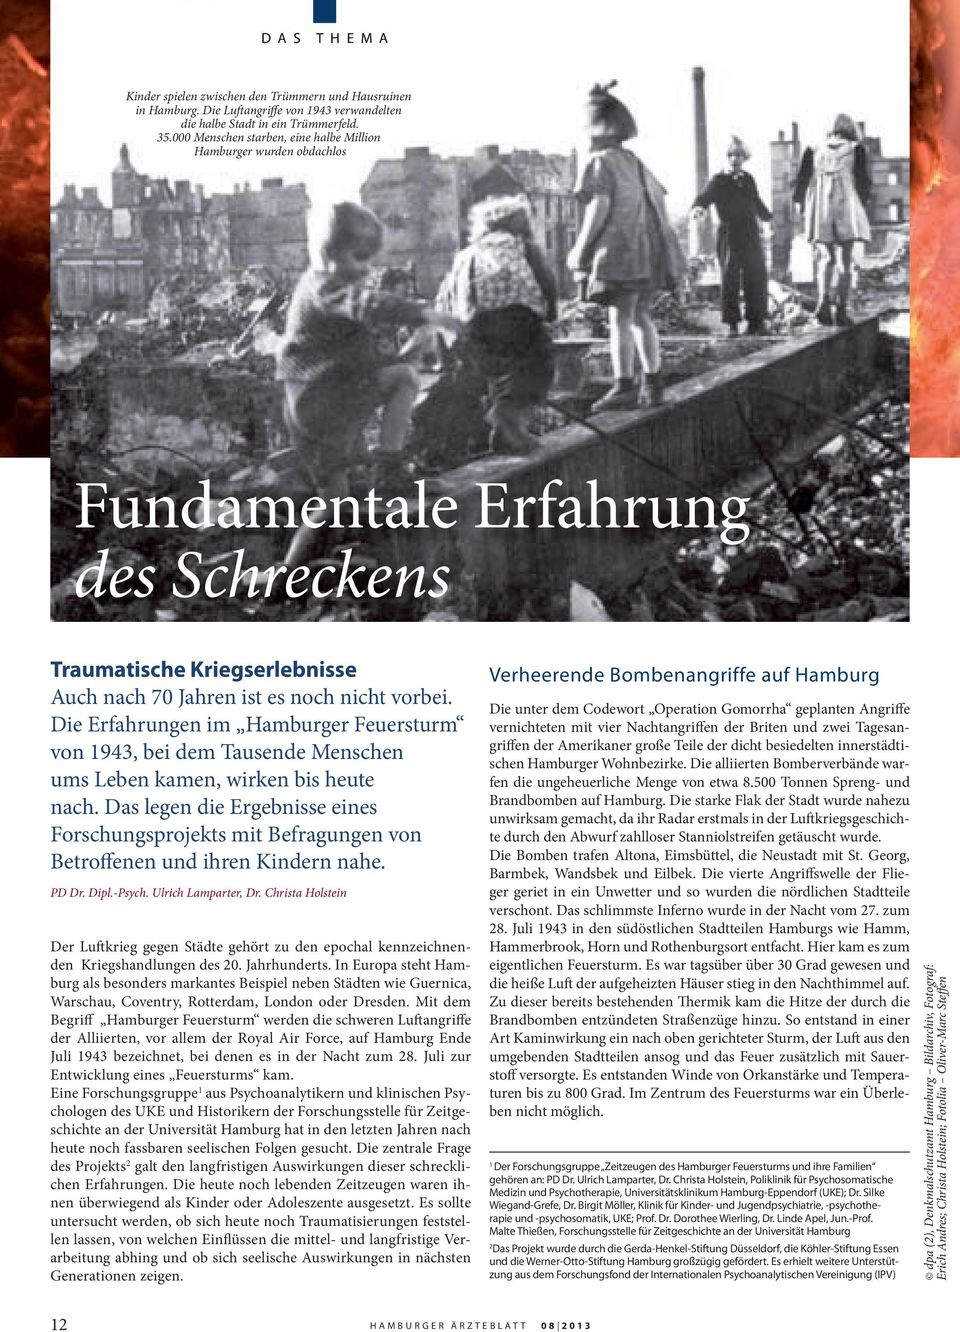 Die Erfahrungen im Hamburger Feuersturm von 1943, bei dem Tausende Menschen ums Leben kamen, wirken bis heute nach.